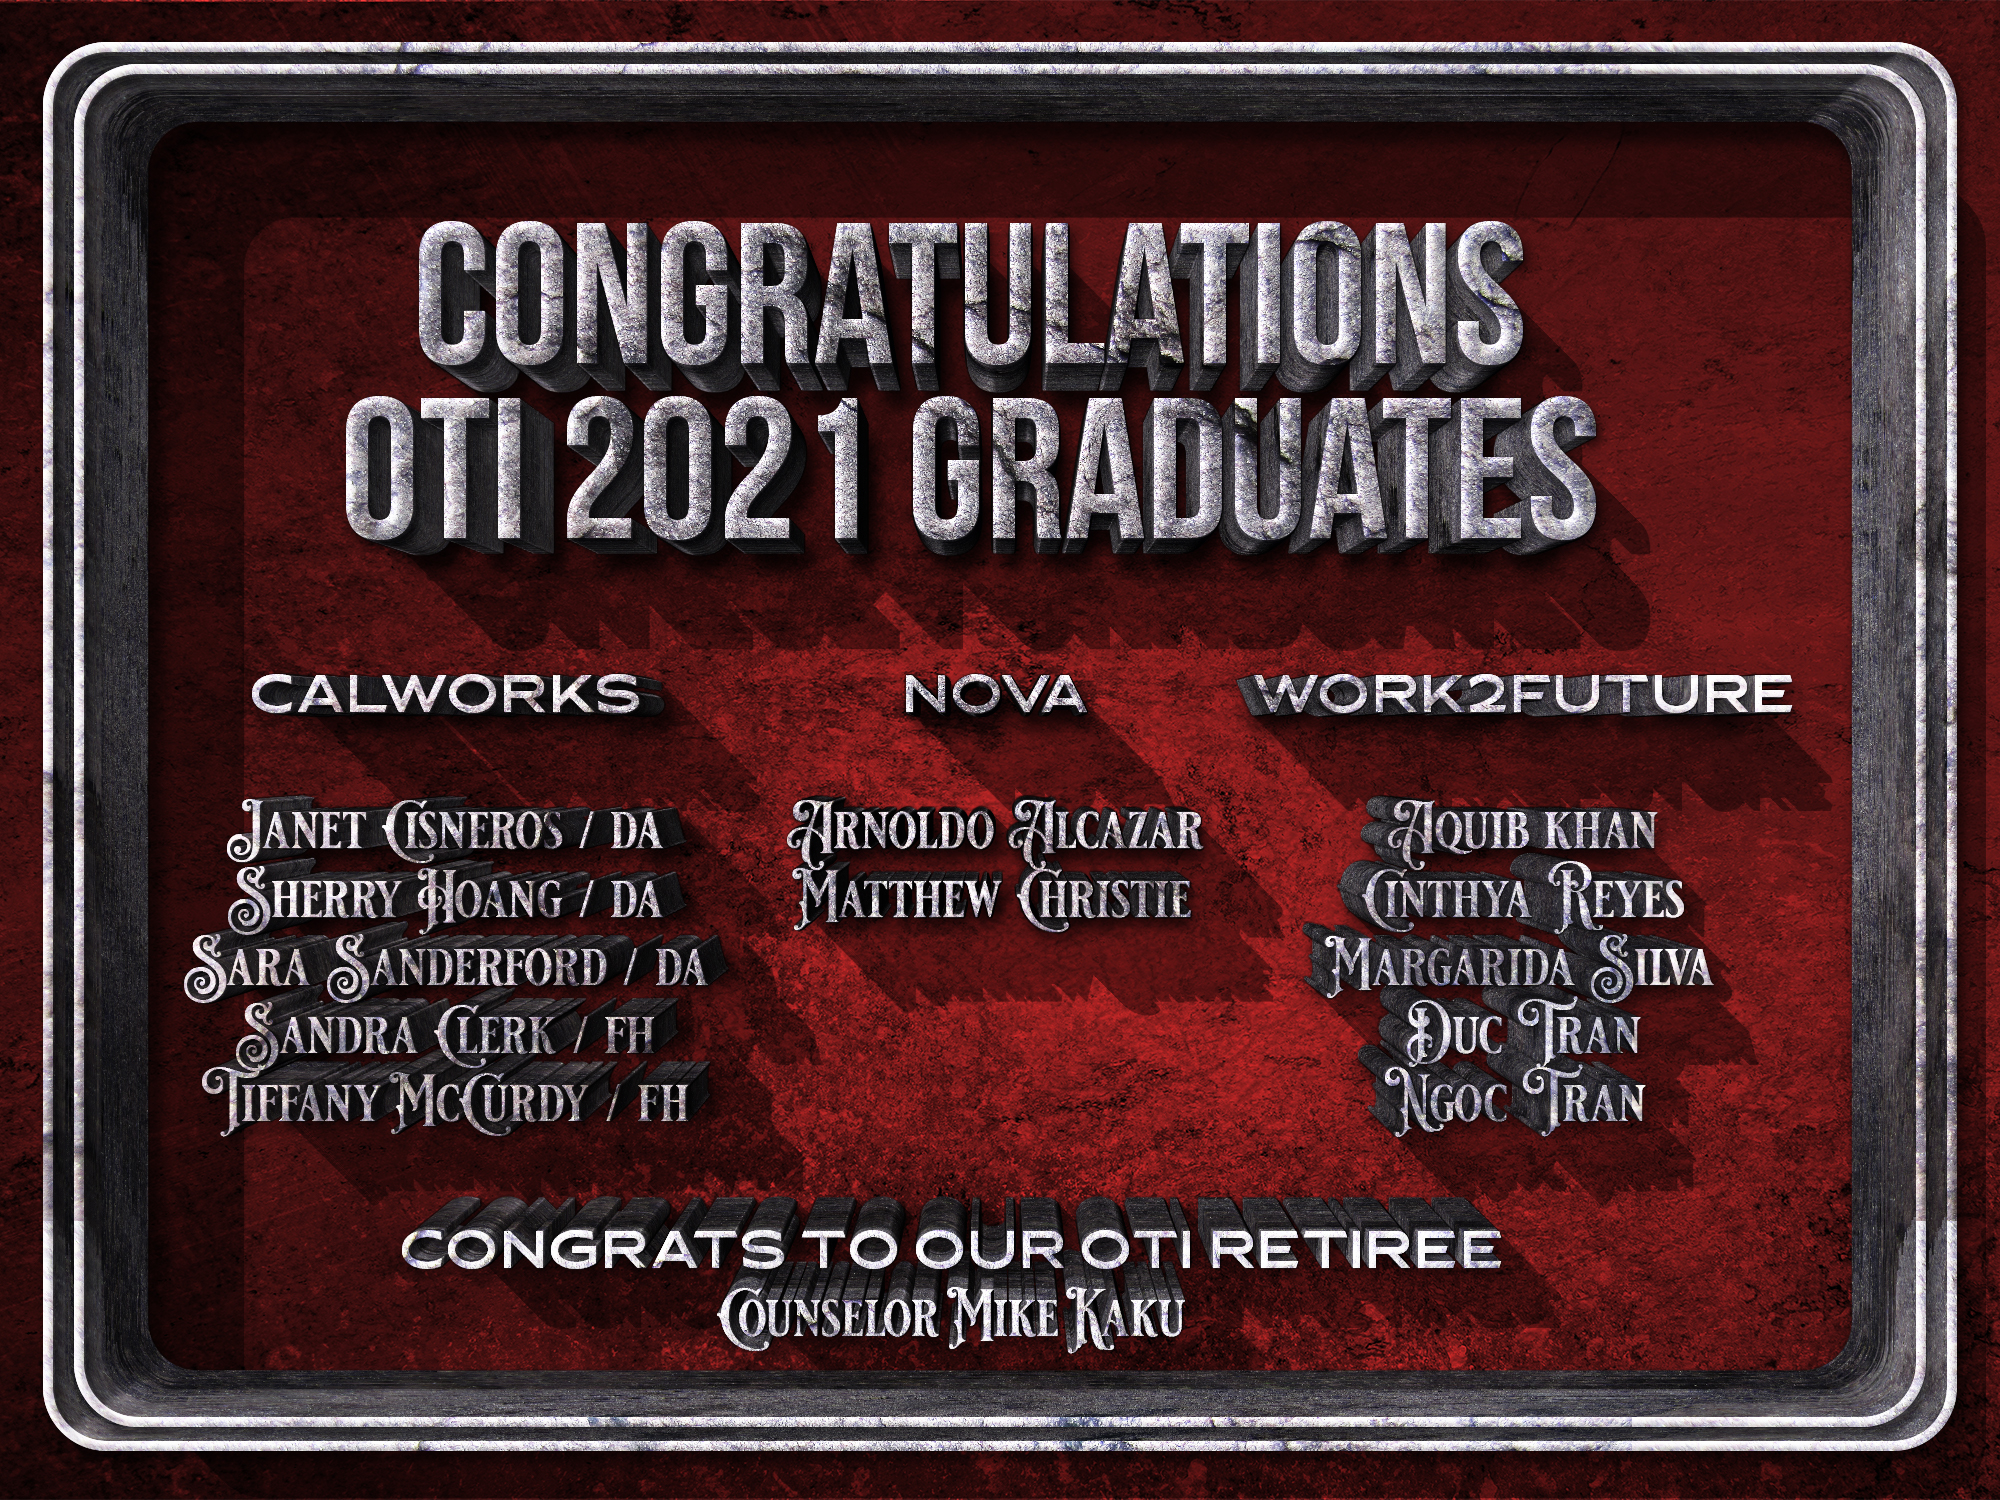 List of OTI 2021 Graduates